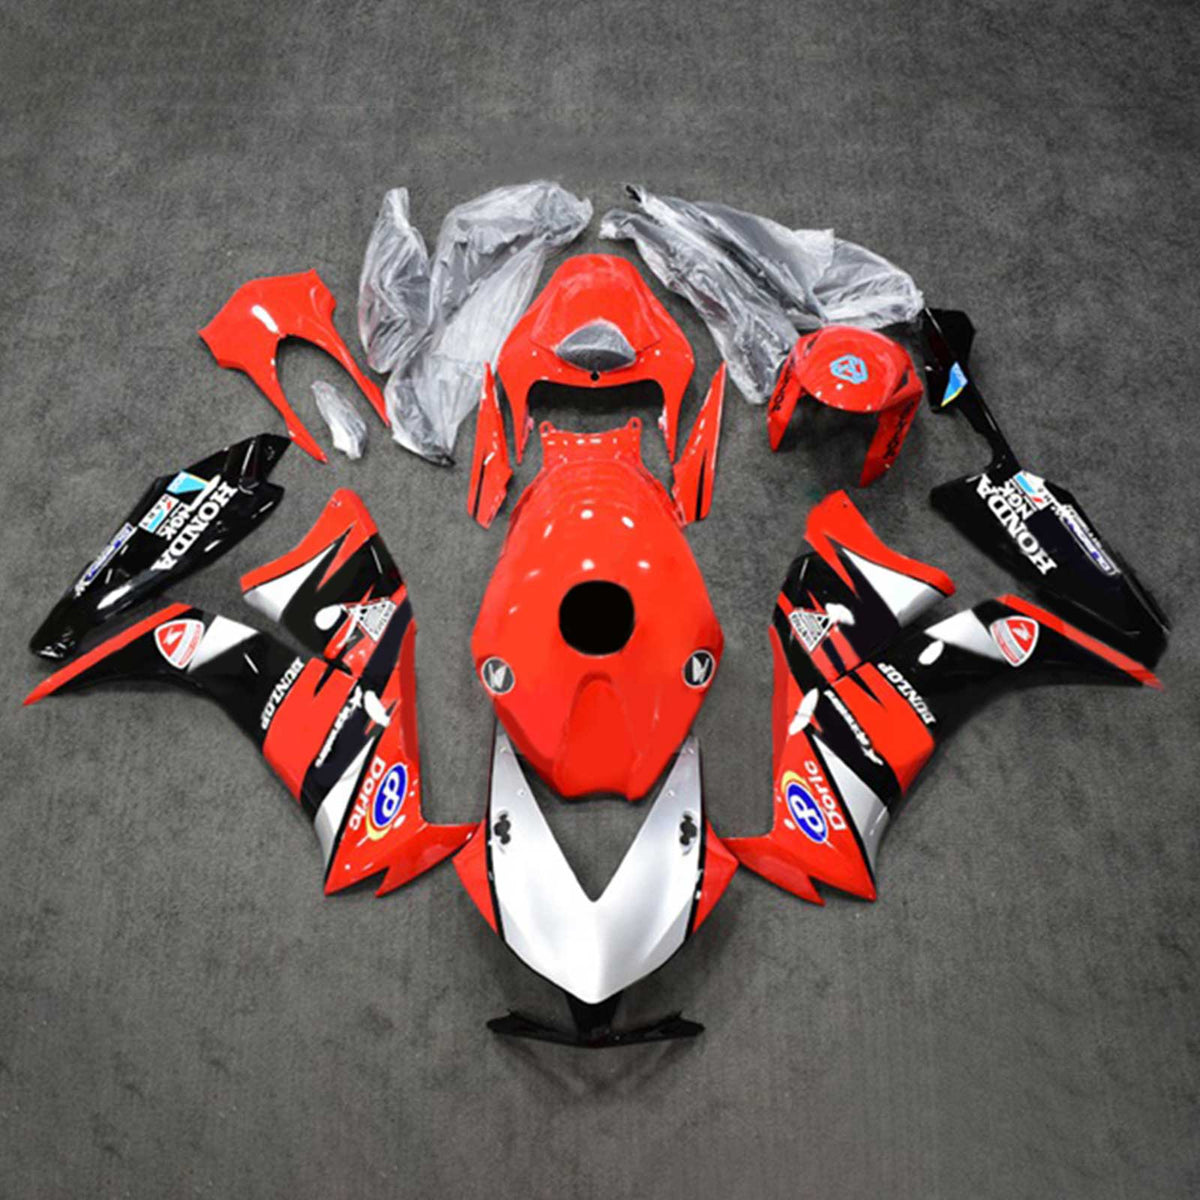 Amotopart 2012-2016 CBR1000RR Honda Red&Silver Fairing Kit